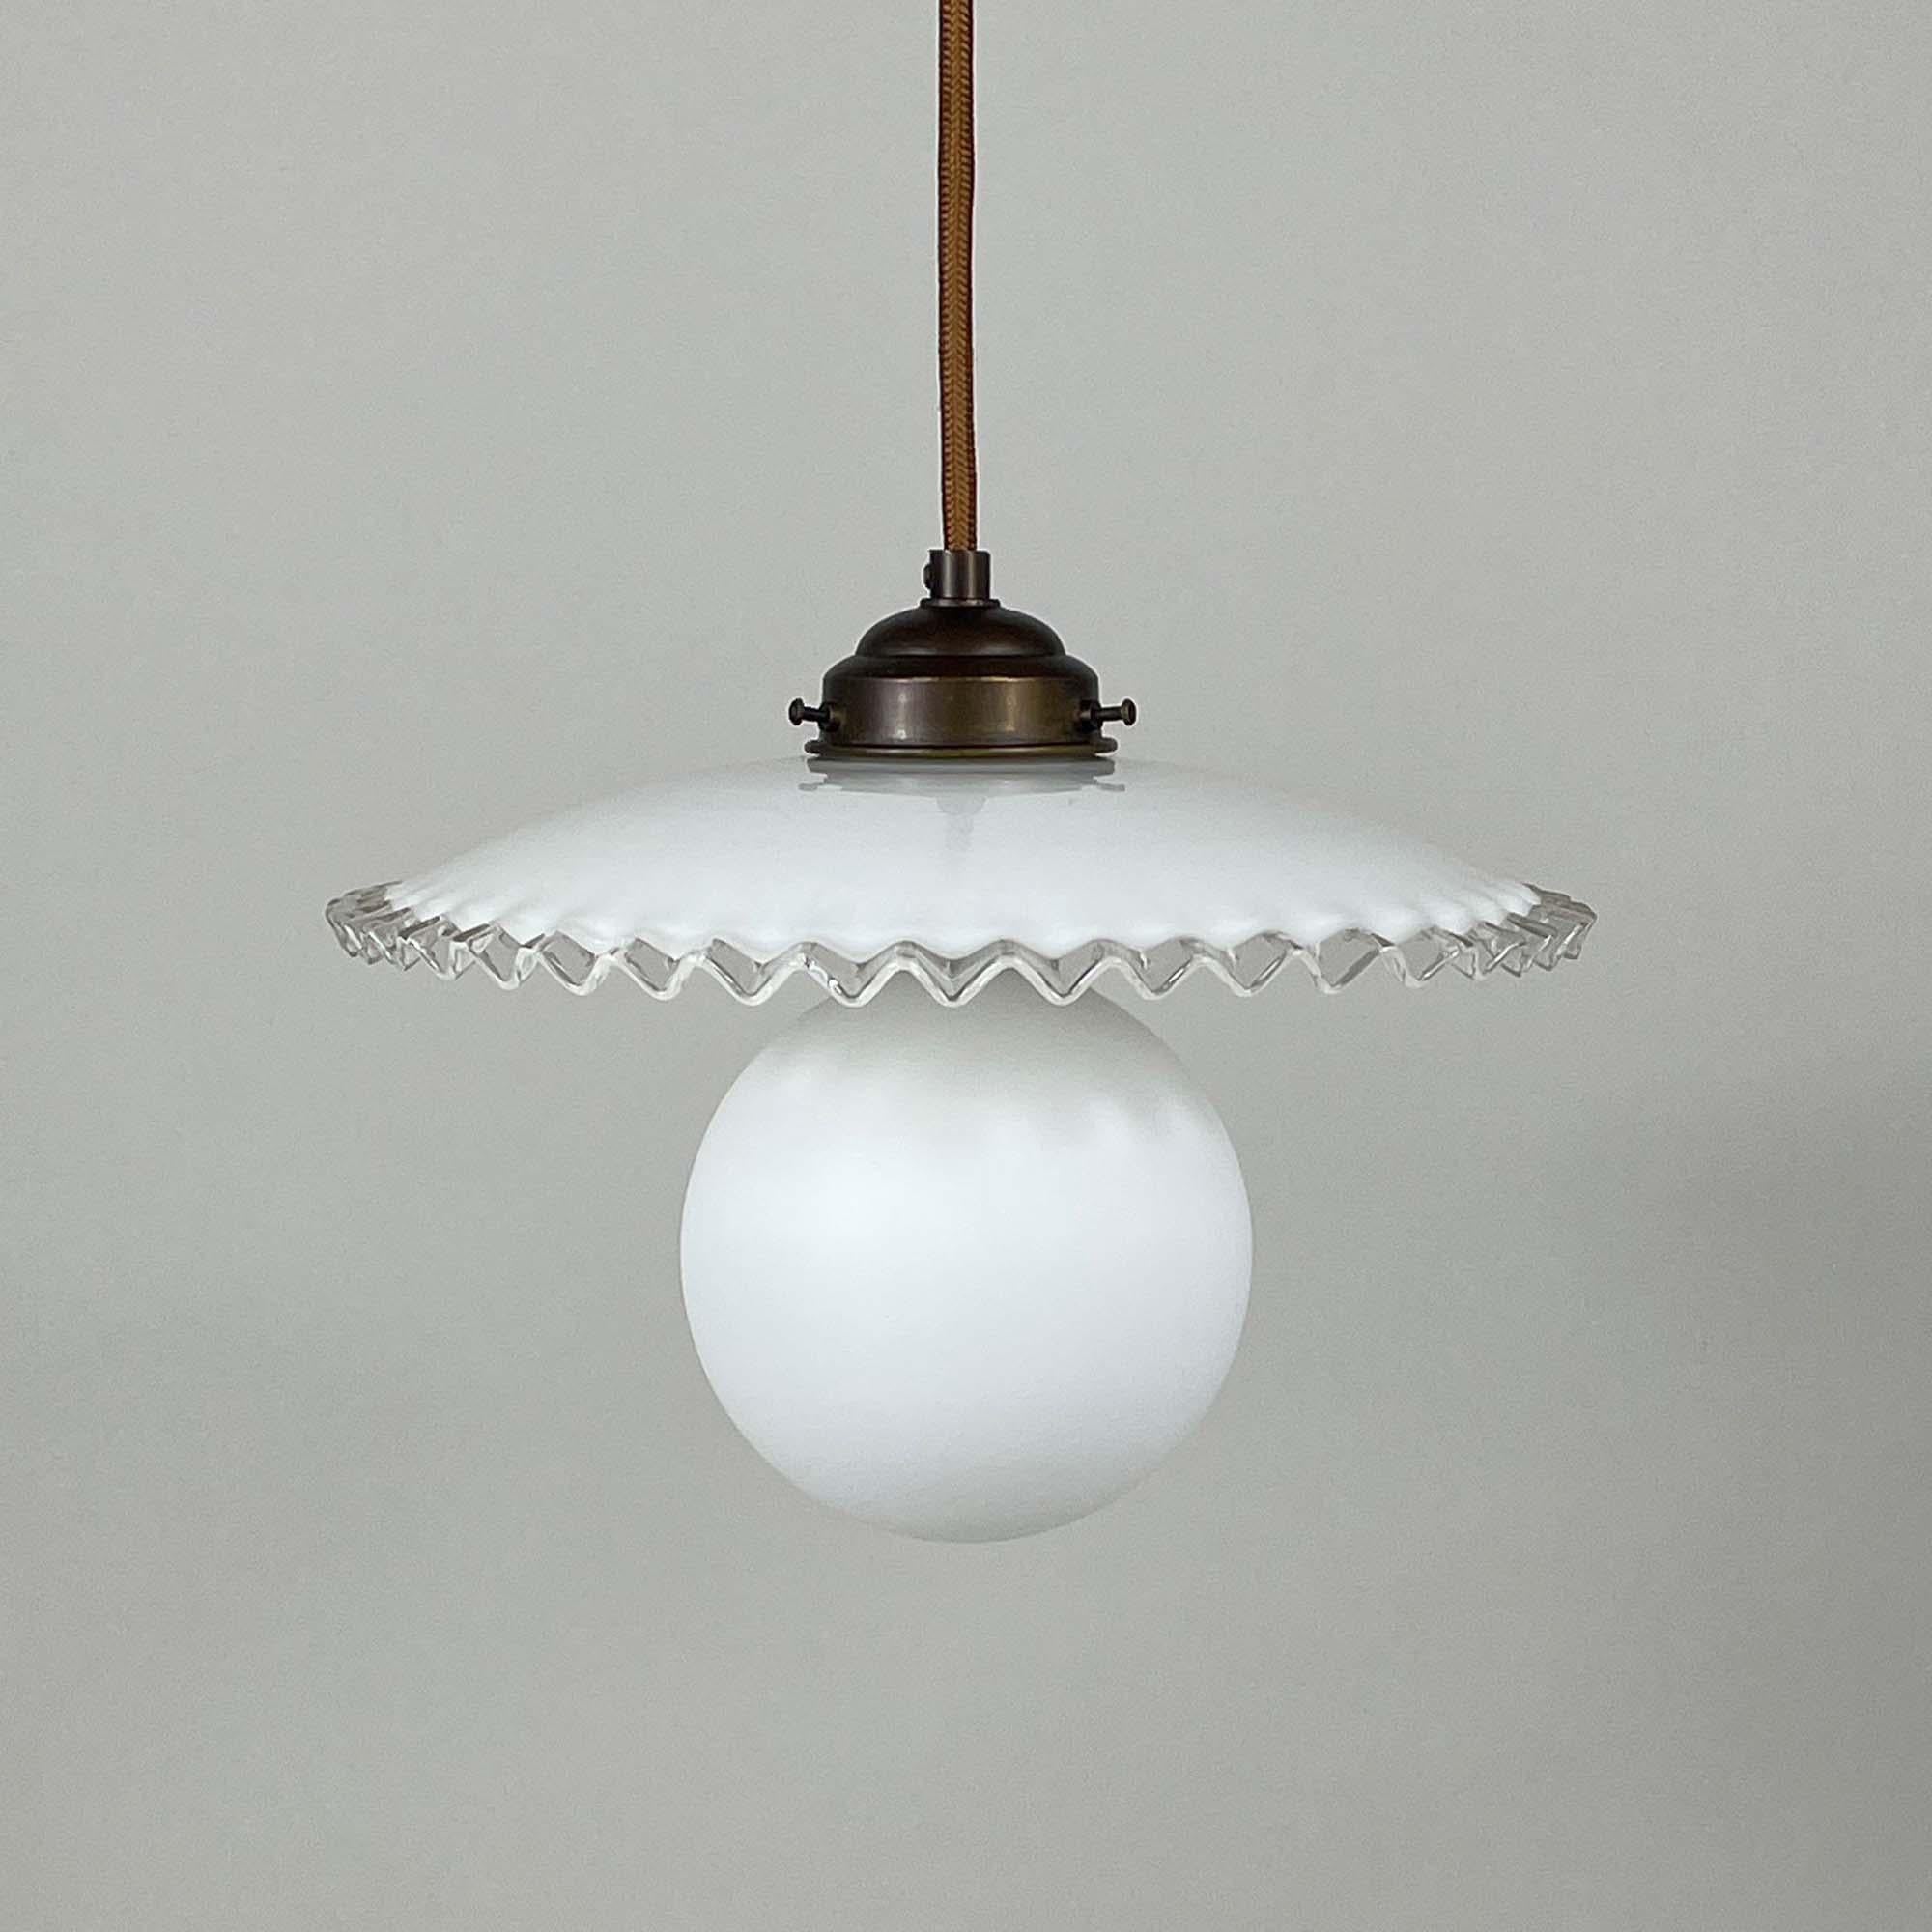 Cette lampe suspendue a été conçue et fabriquée en France dans les années 1950. La lampe est dotée d'un abat-jour en verre plissé blanc opalin et d'un support en laiton bronzé. Elle nécessite une ampoule E27 jusqu'à 60 Watt (LED recommandée) et a